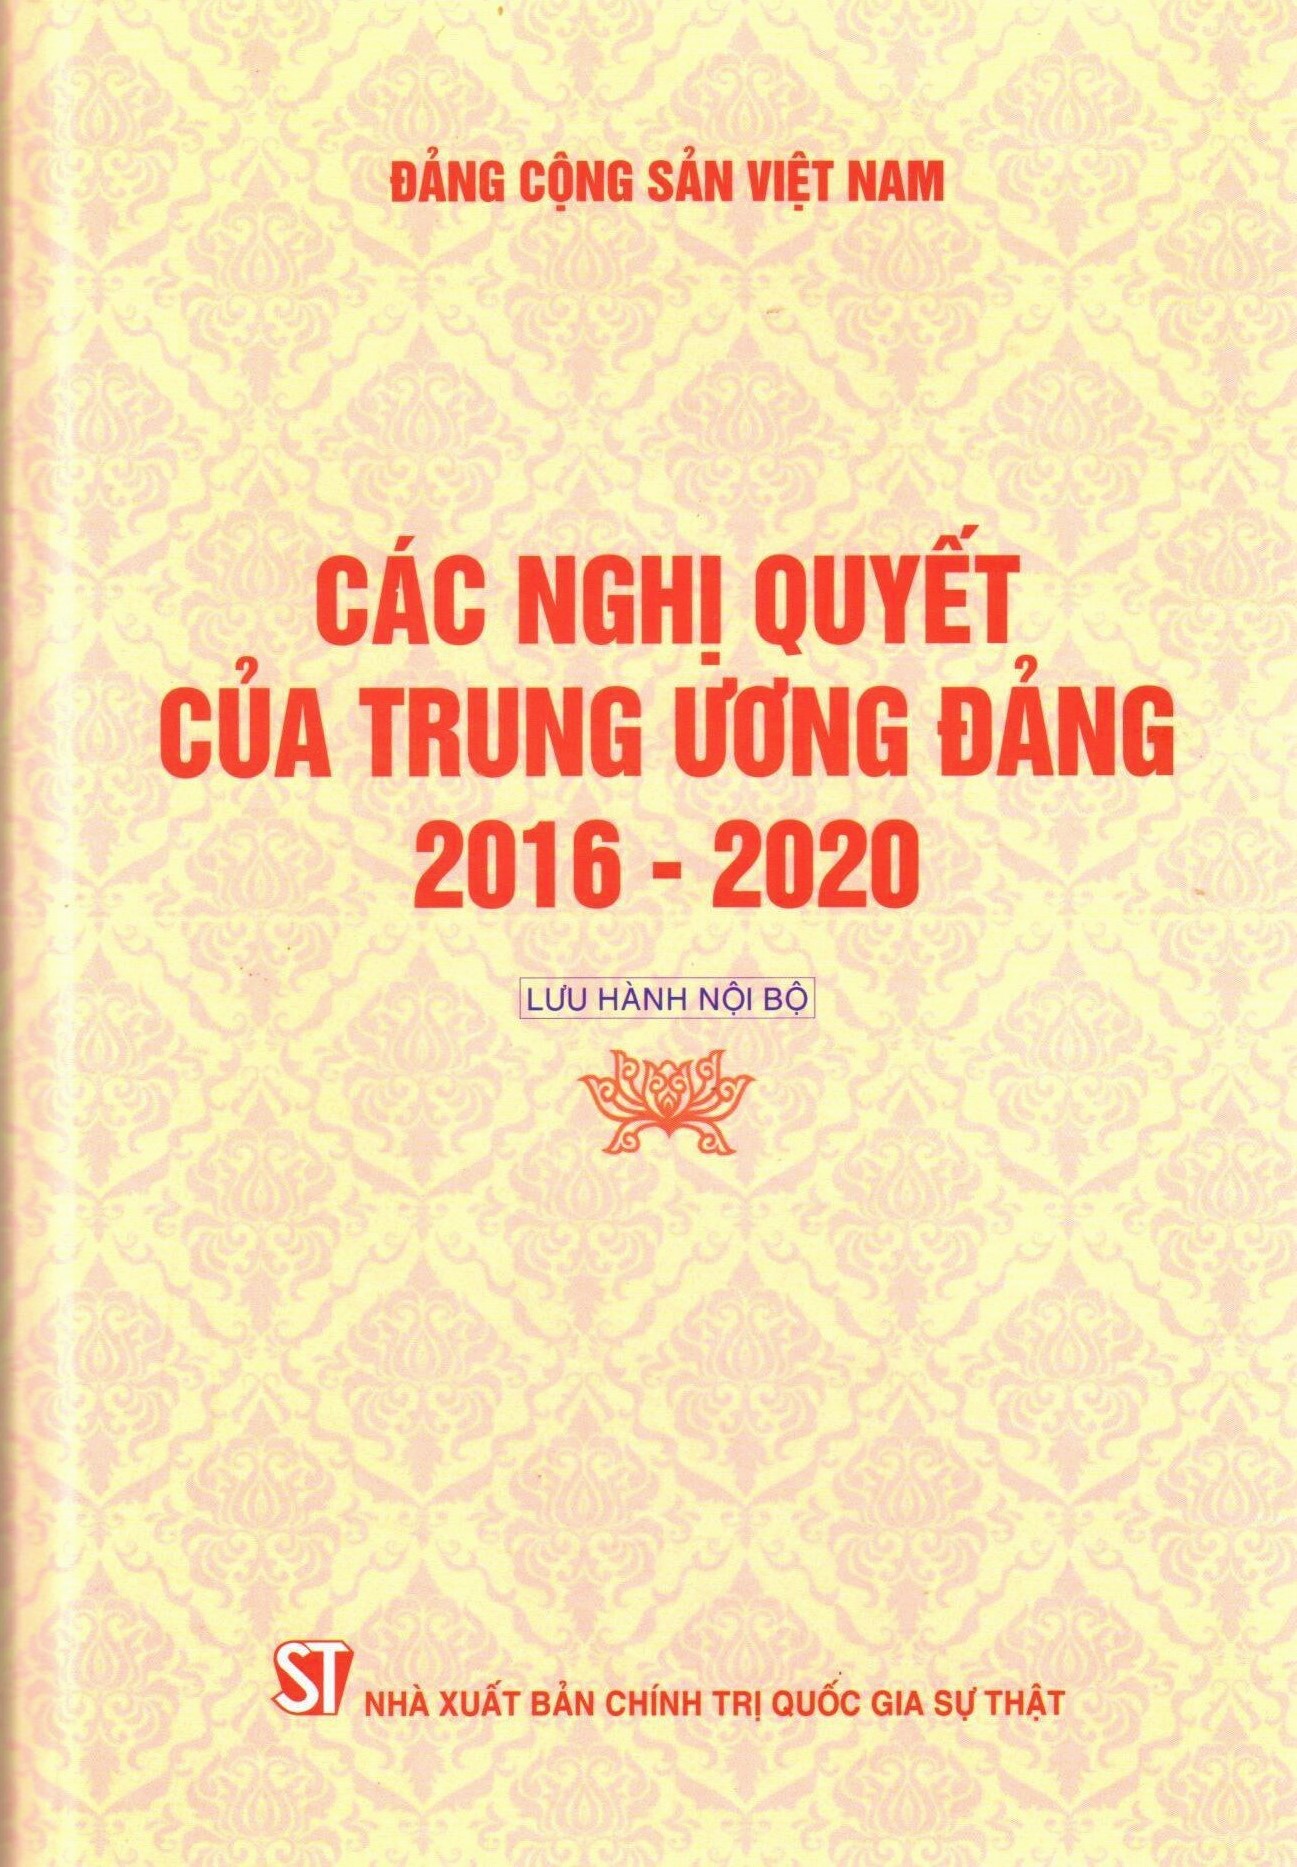 Các nghị quyết của Trung ương Đảng 2016 - 2020 (Lưu hành nội bộ)